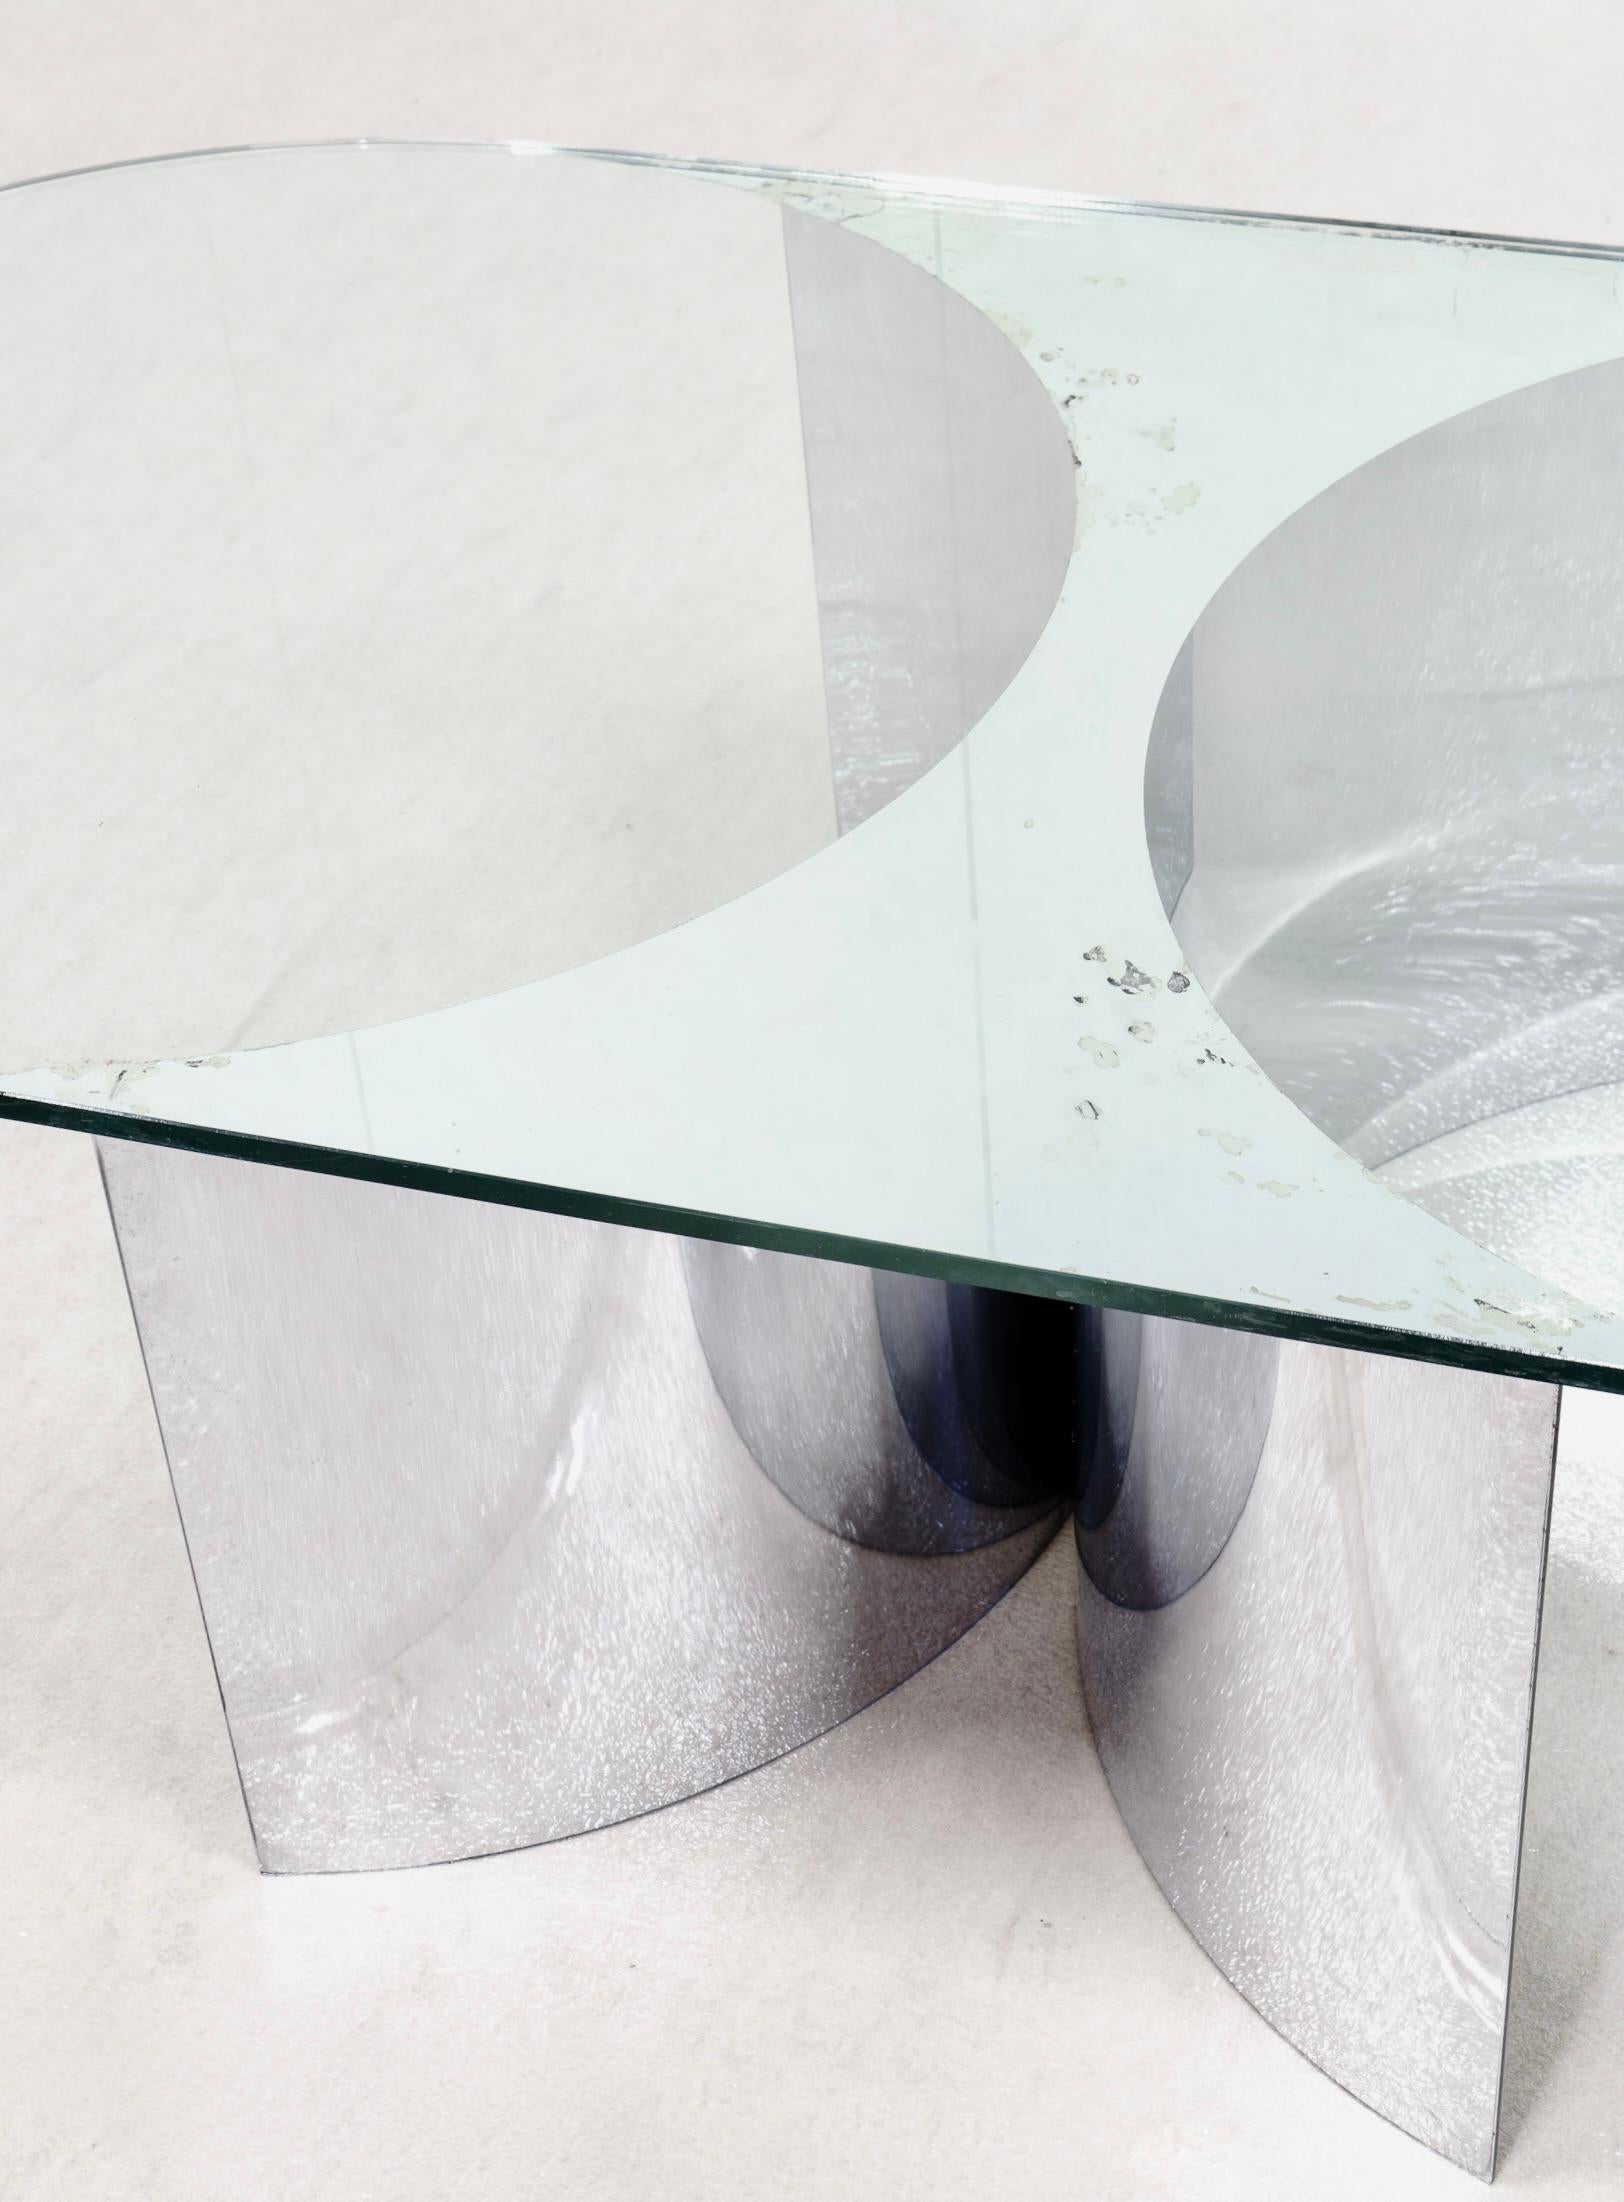 Grande table basse de Giuseppe Raimondi, modèle Jorn 3102 avec une base concave en acier chromé. Plateau en verre arrondi décoré de demi-cercles en verre. Italie 70 ans.